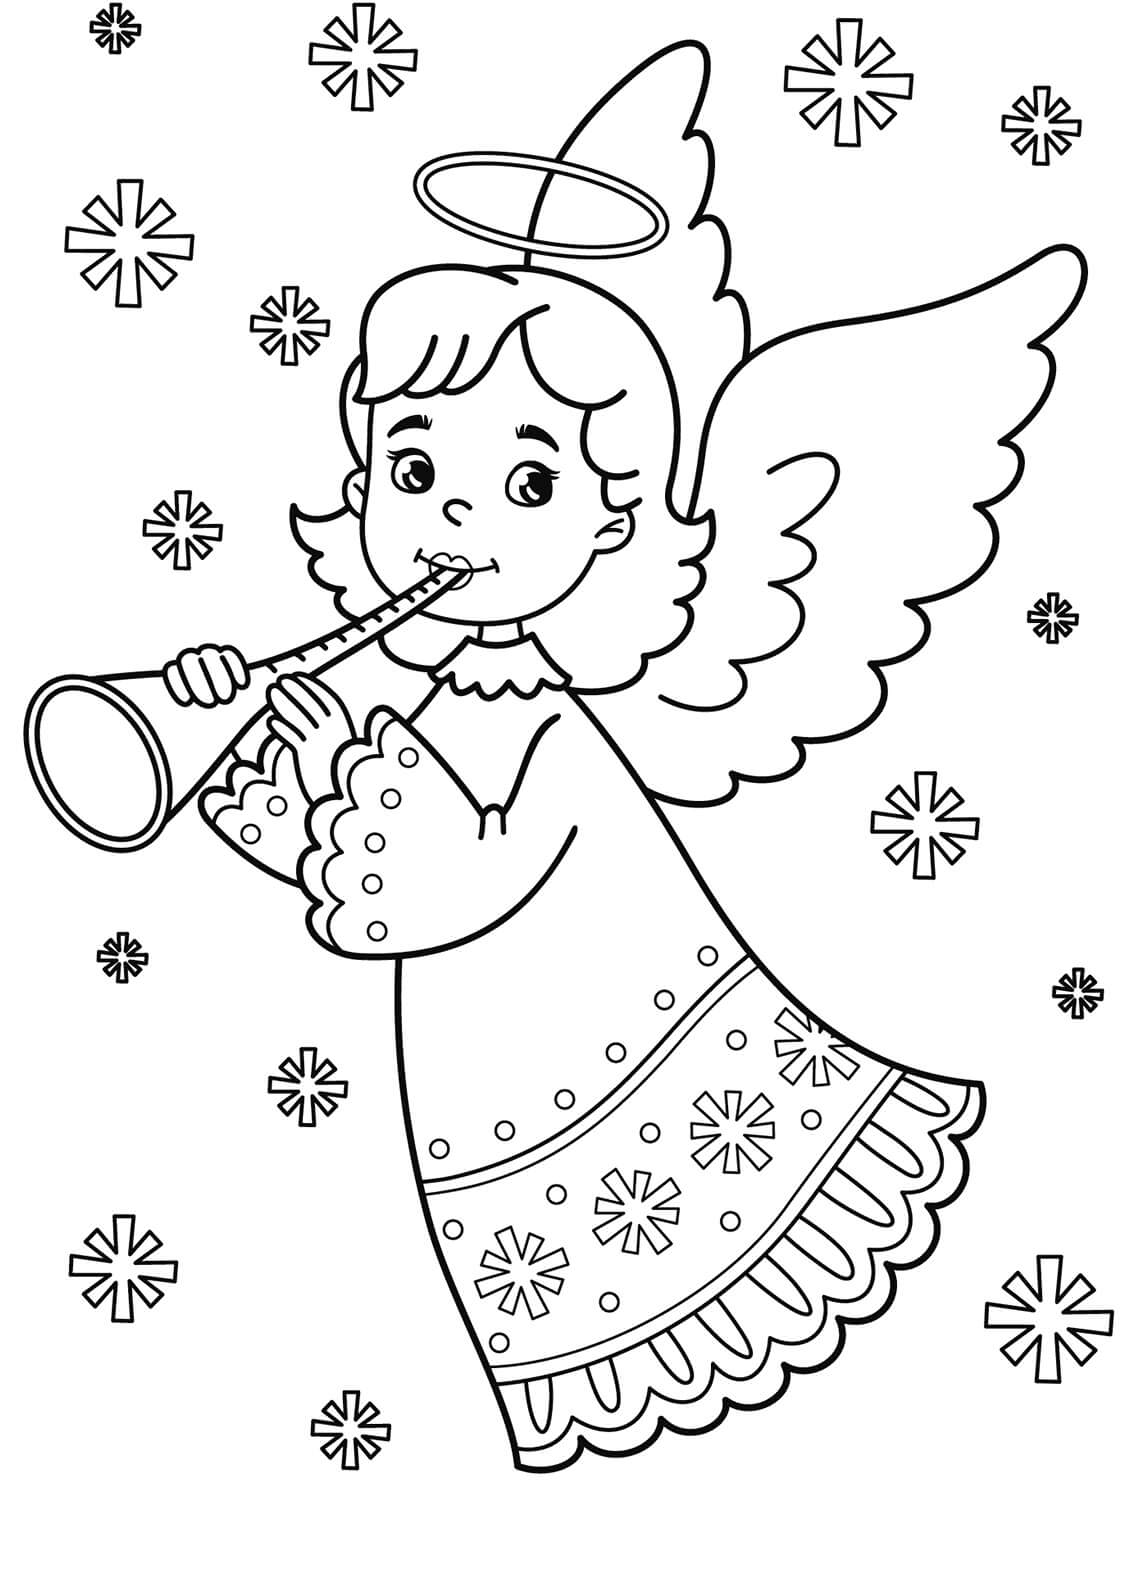 눈송이로 트럼펫을 연주하는 작은 천사